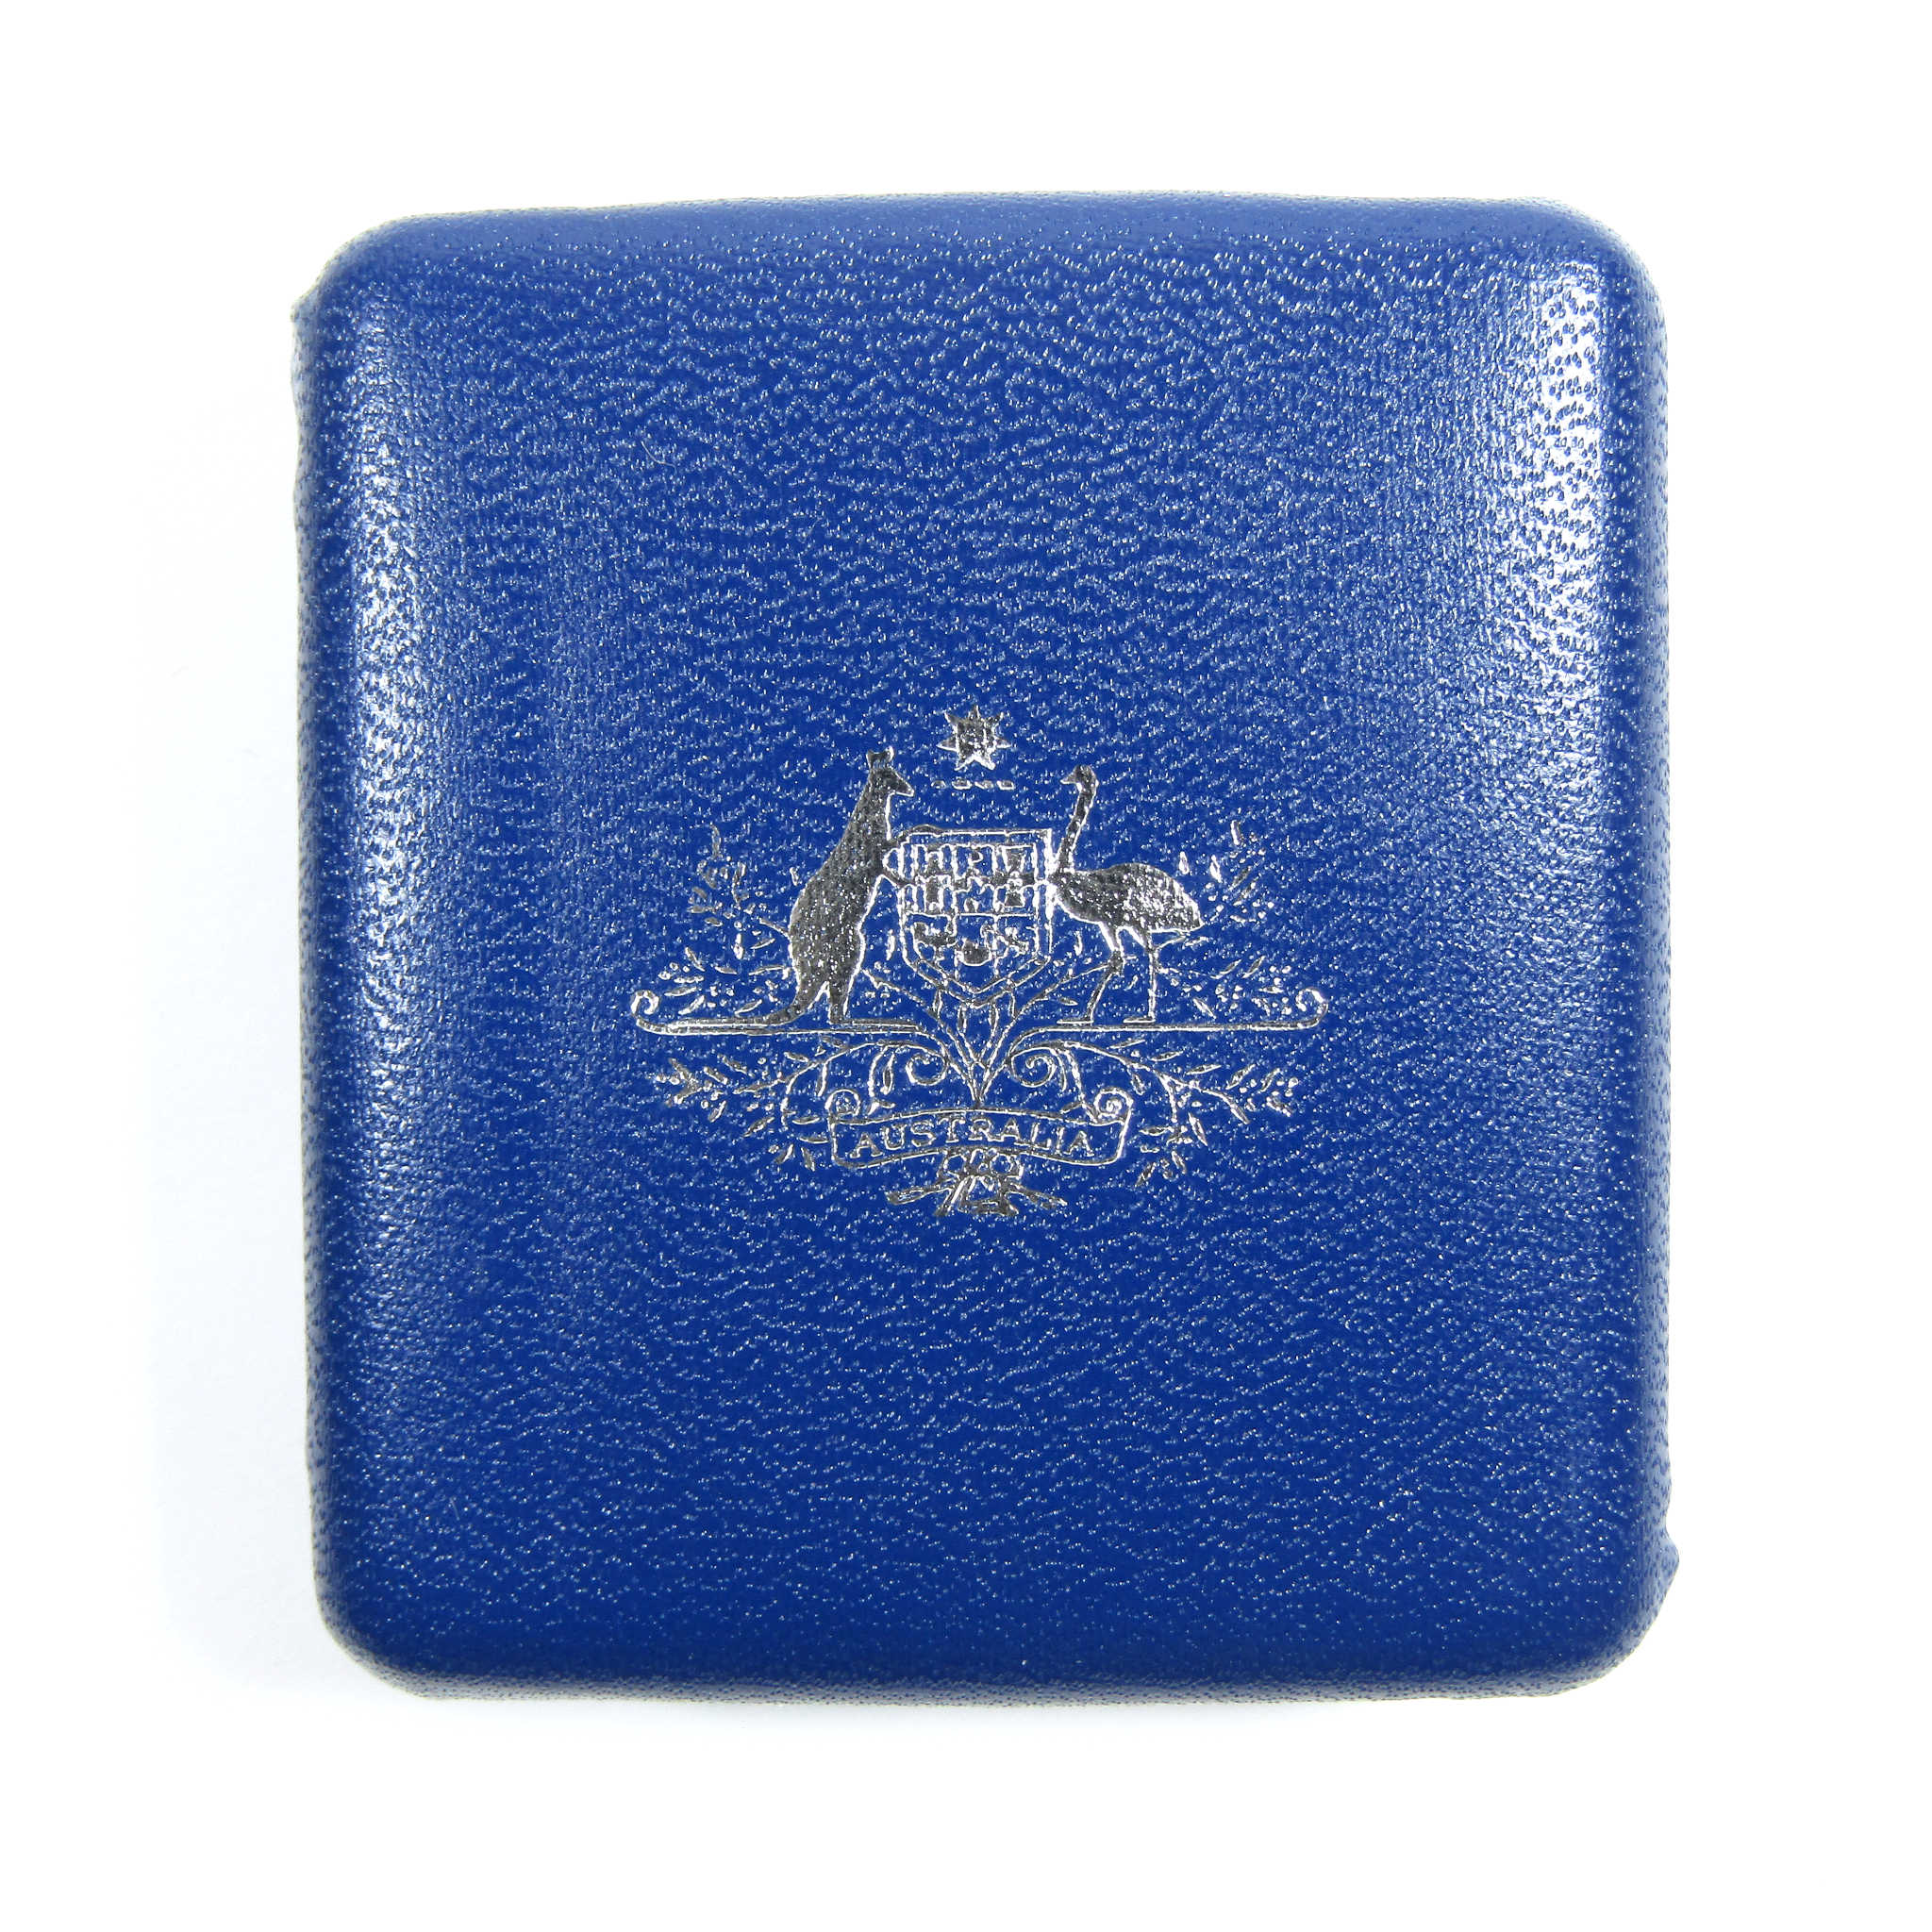 1985 Australia Victoria 20 g .925 Silver $10 Proof SKU:CPC6229